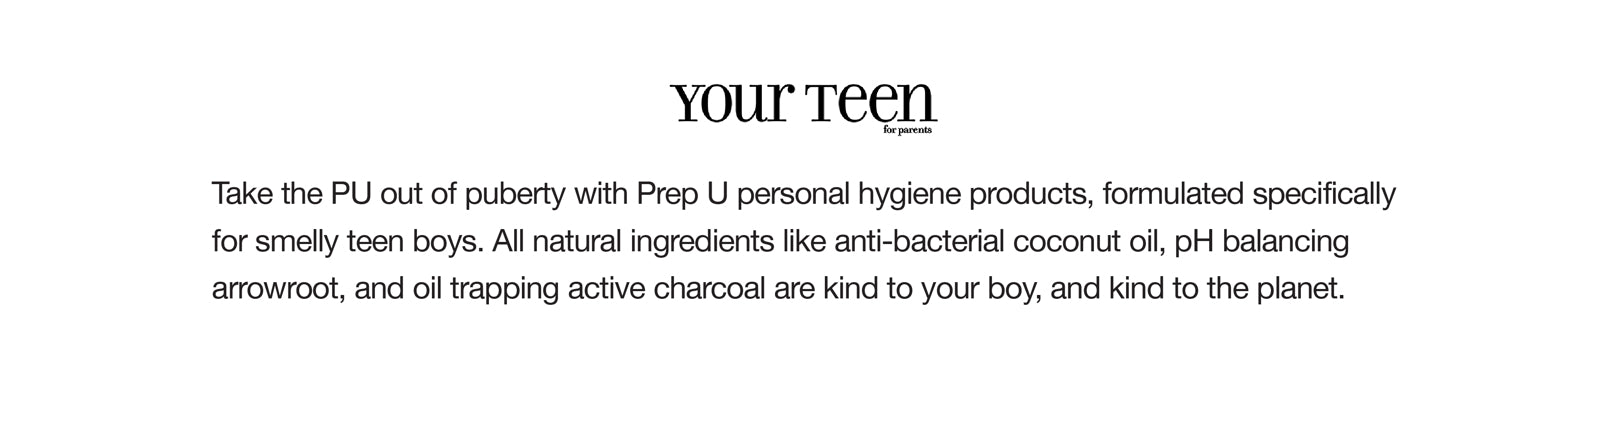 Prep U  Clean Hygiene for Guys